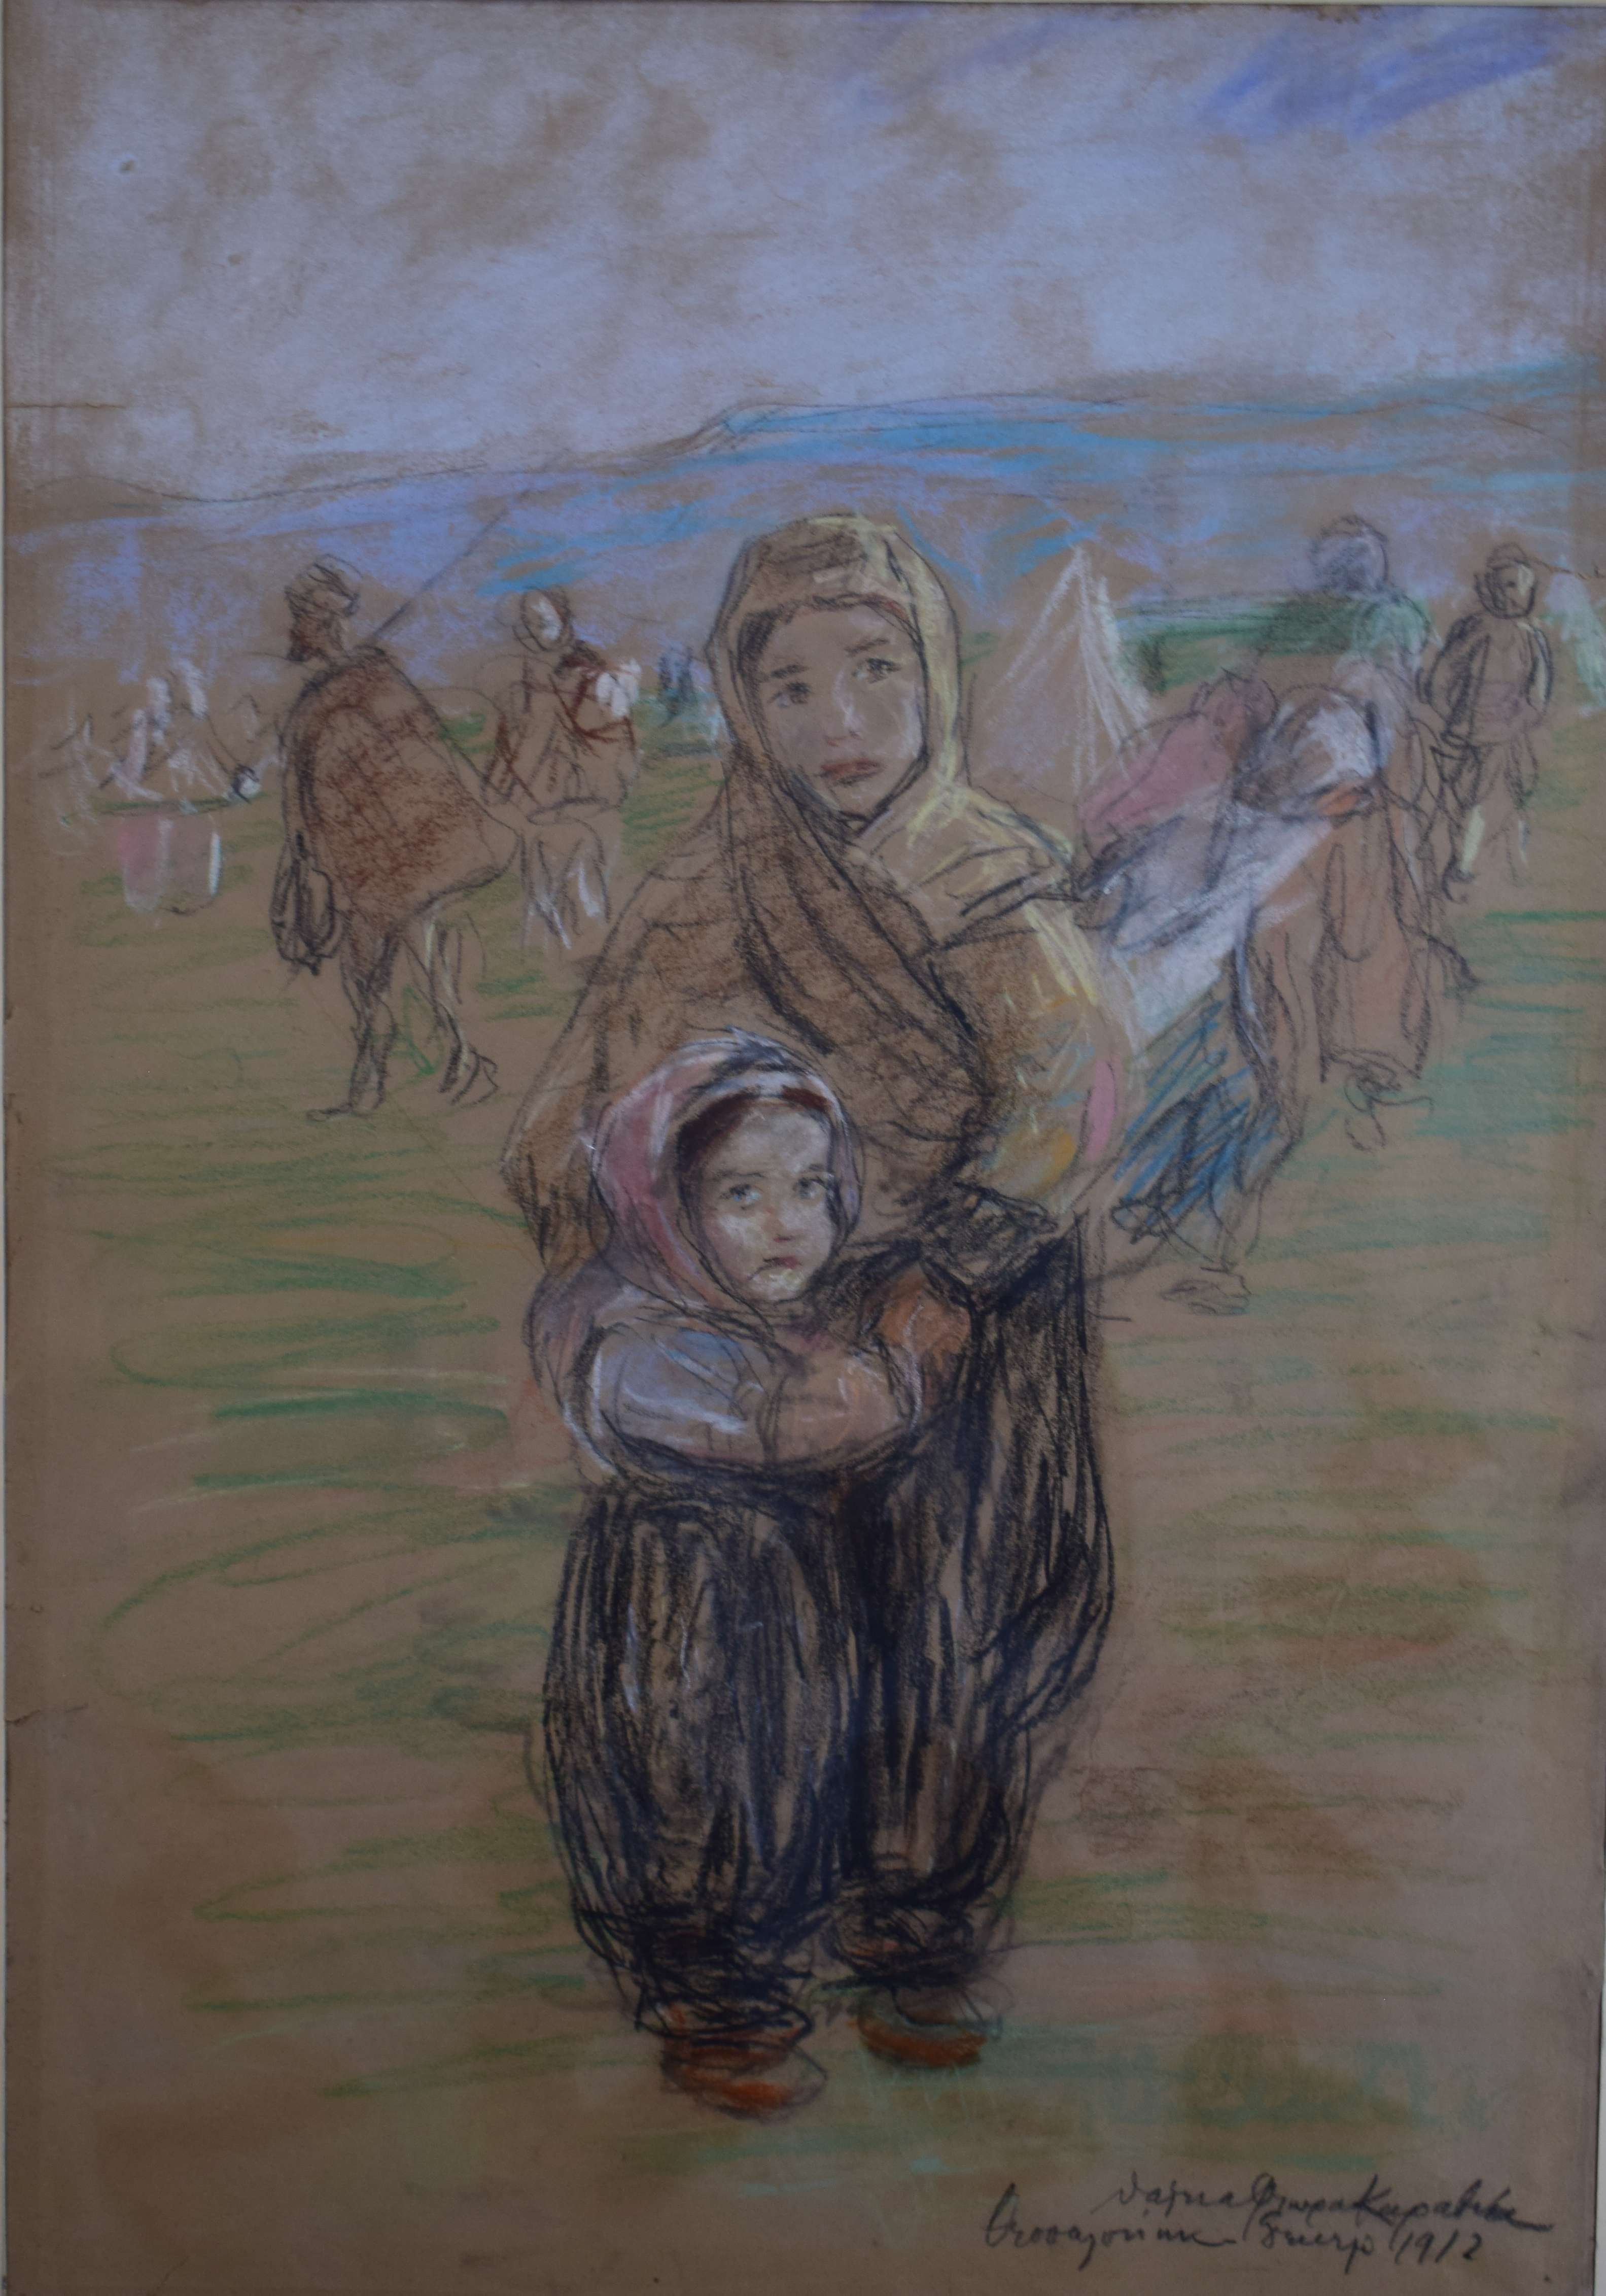 Δυο γυναίκες που βρέθηκαν στην πρώτη γραμμή πολέμου και τέχνης- Έκθεση στο Μουσείο Μακεδονικού Αγώνα